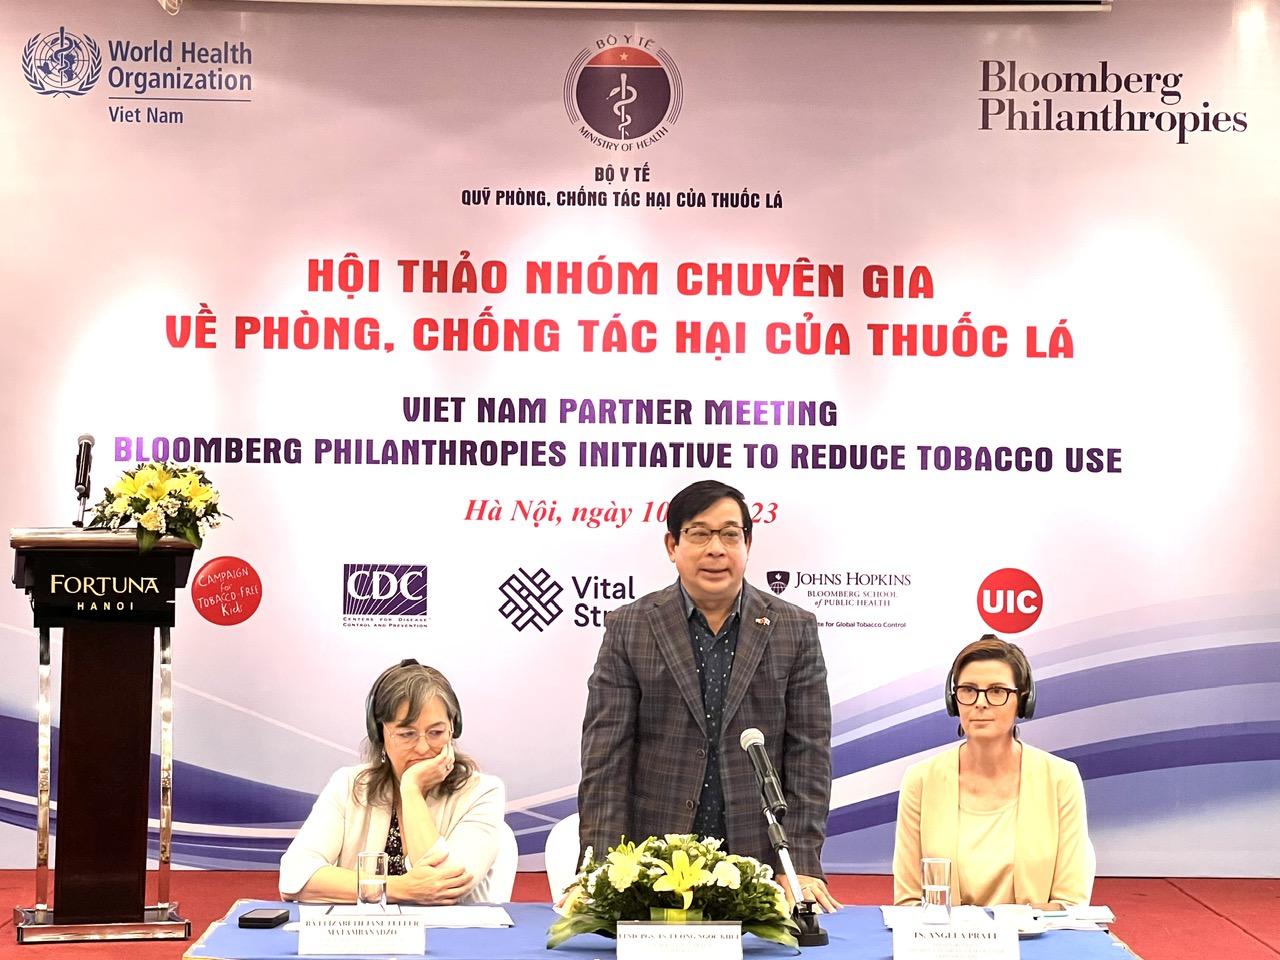 Ưu tiên hỗ trợ Việt Nam thực hiện các mục tiêu của Chiến lược Quốc gia về phòng chống tác hại thuốc lá  - Ảnh 2.